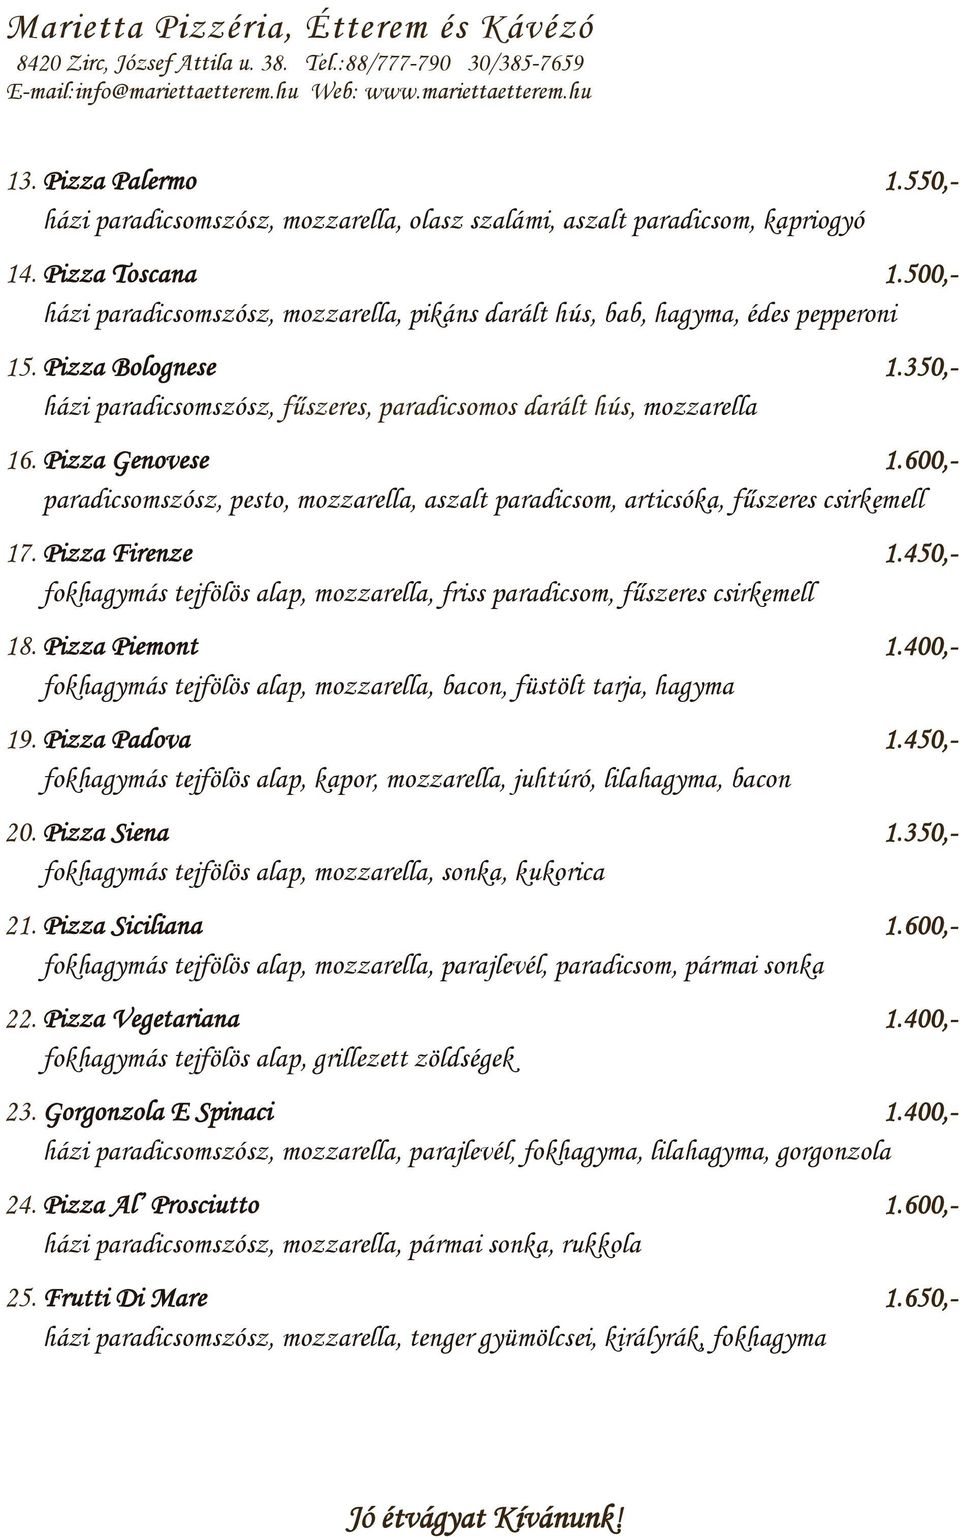 Pizza Genovese 1.600,- paradicsomszósz, pesto, mozzarella, aszalt paradicsom, articsóka, fűszeres csirkemell 17. Pizza Firenze 1.